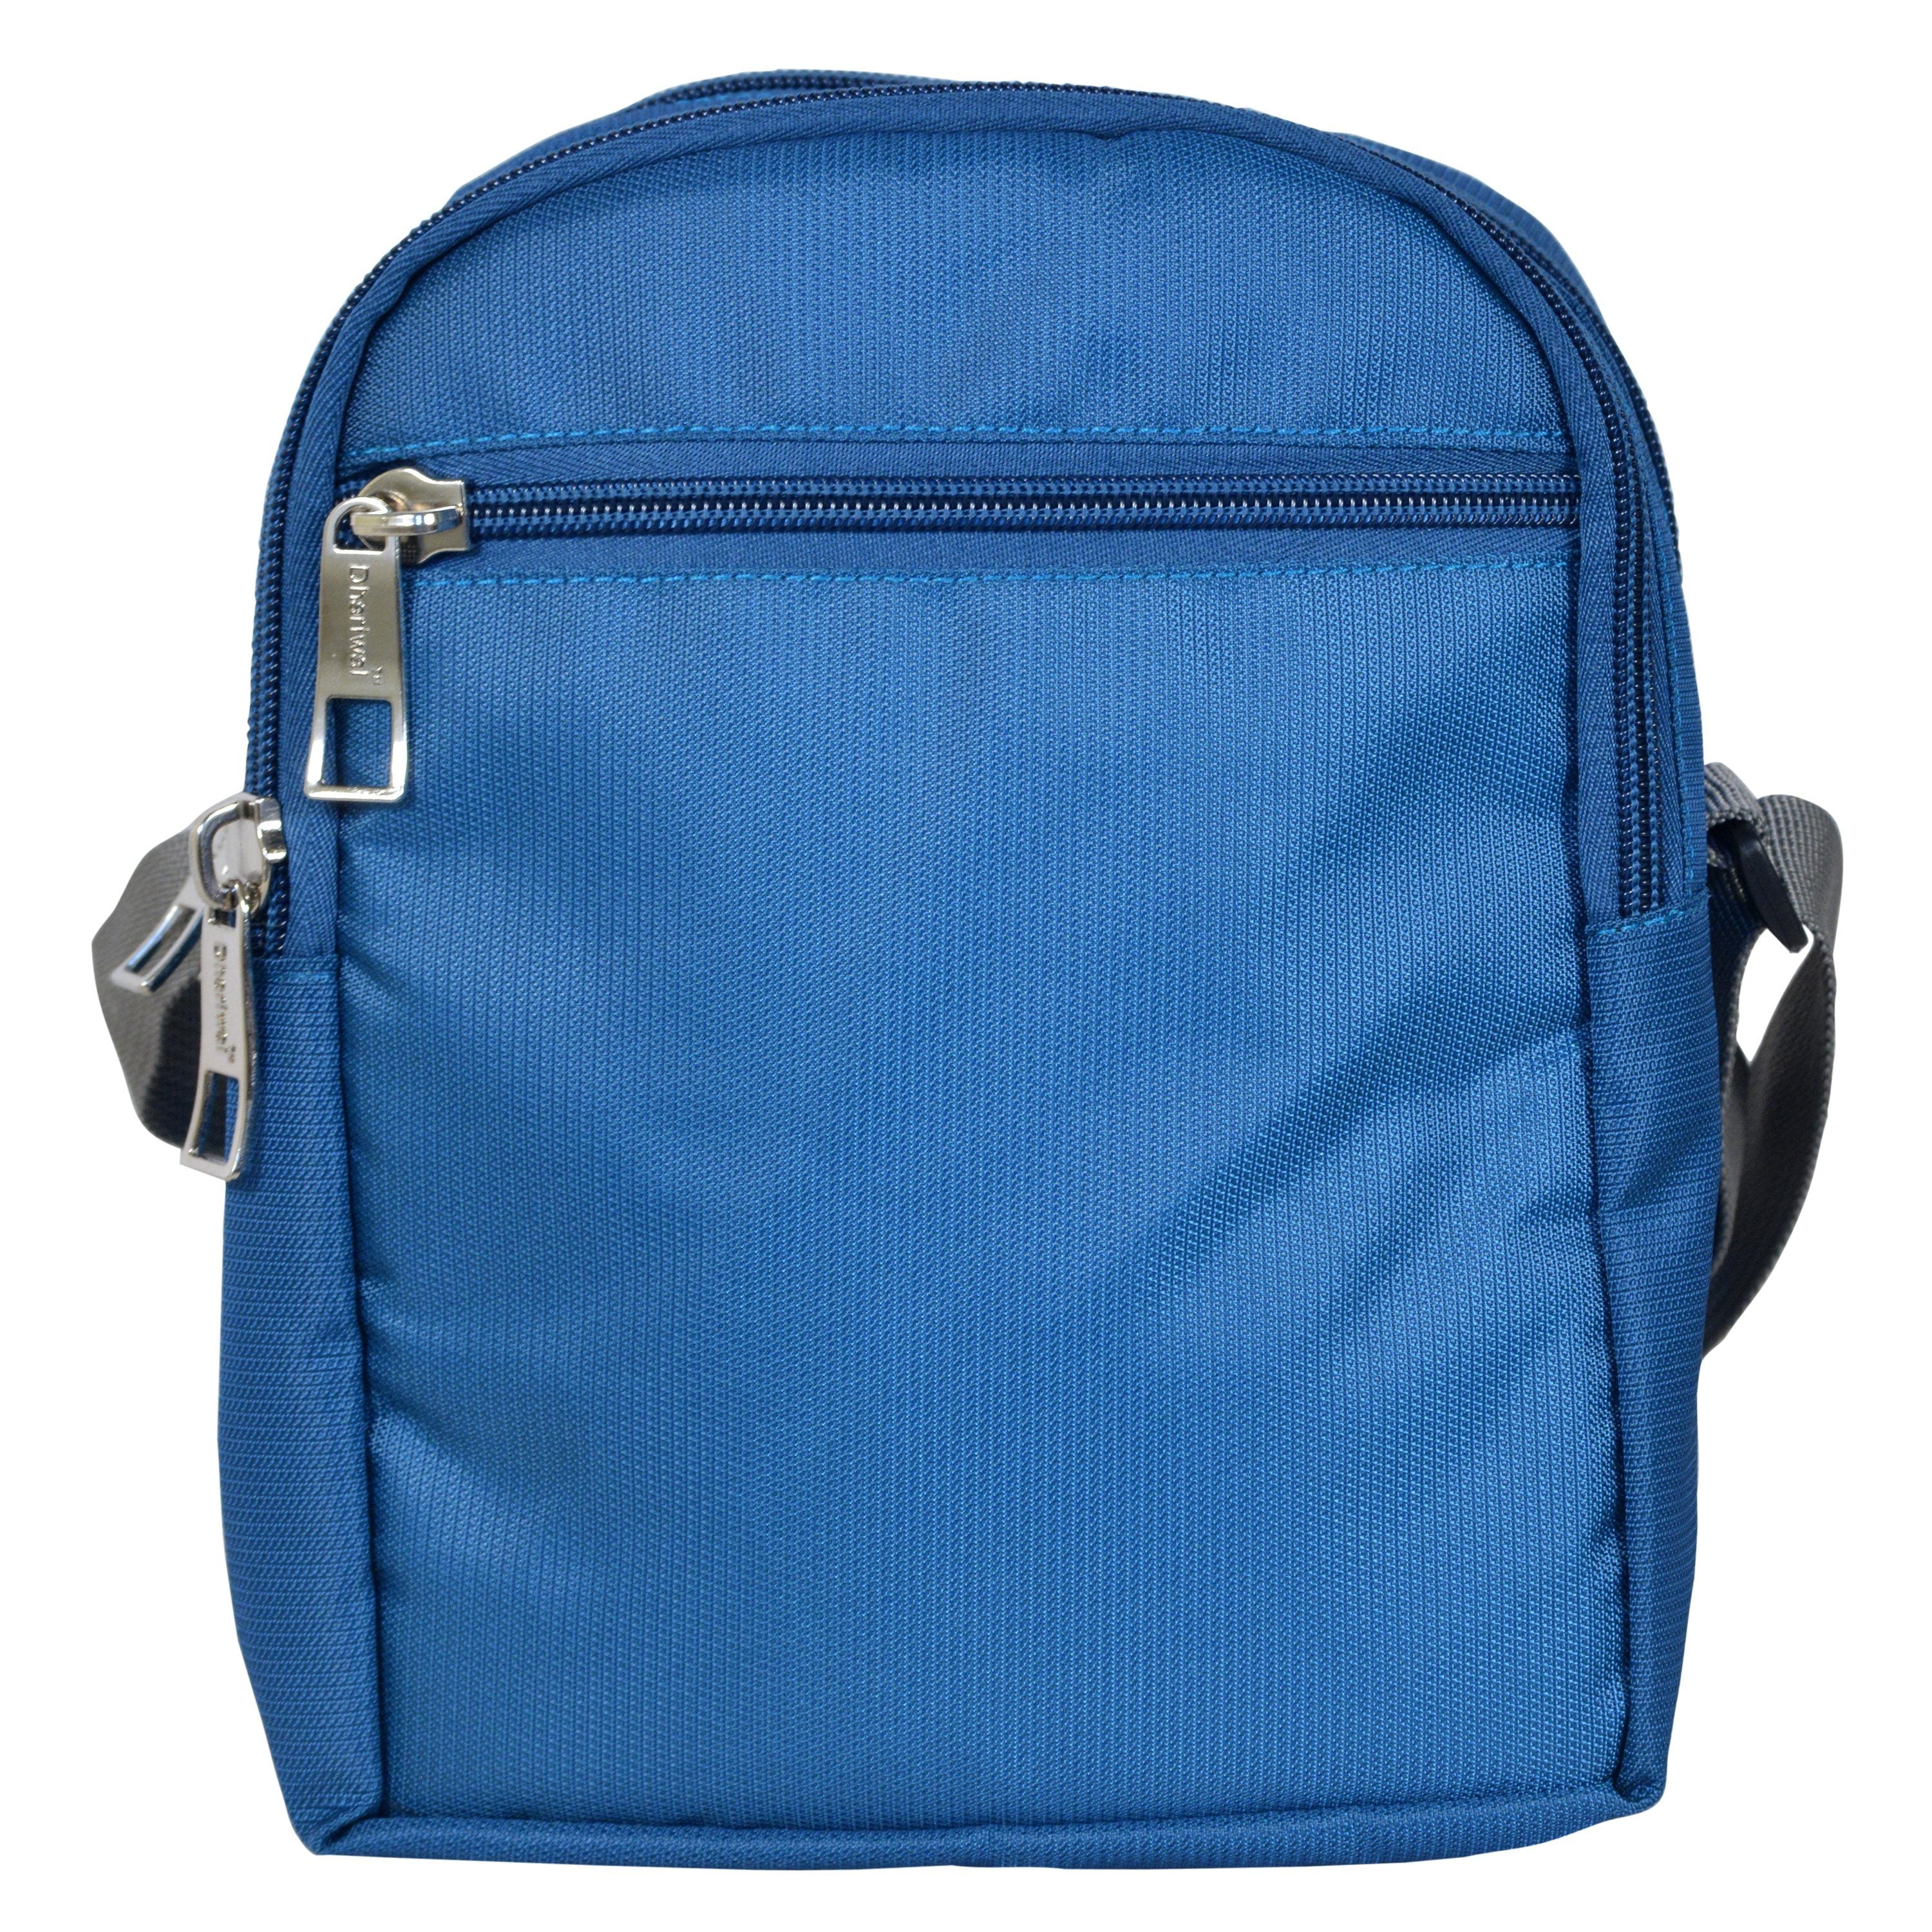 ELECTRIBLES Nylon Sling Cross Body Travel Office Business Messenger Bag